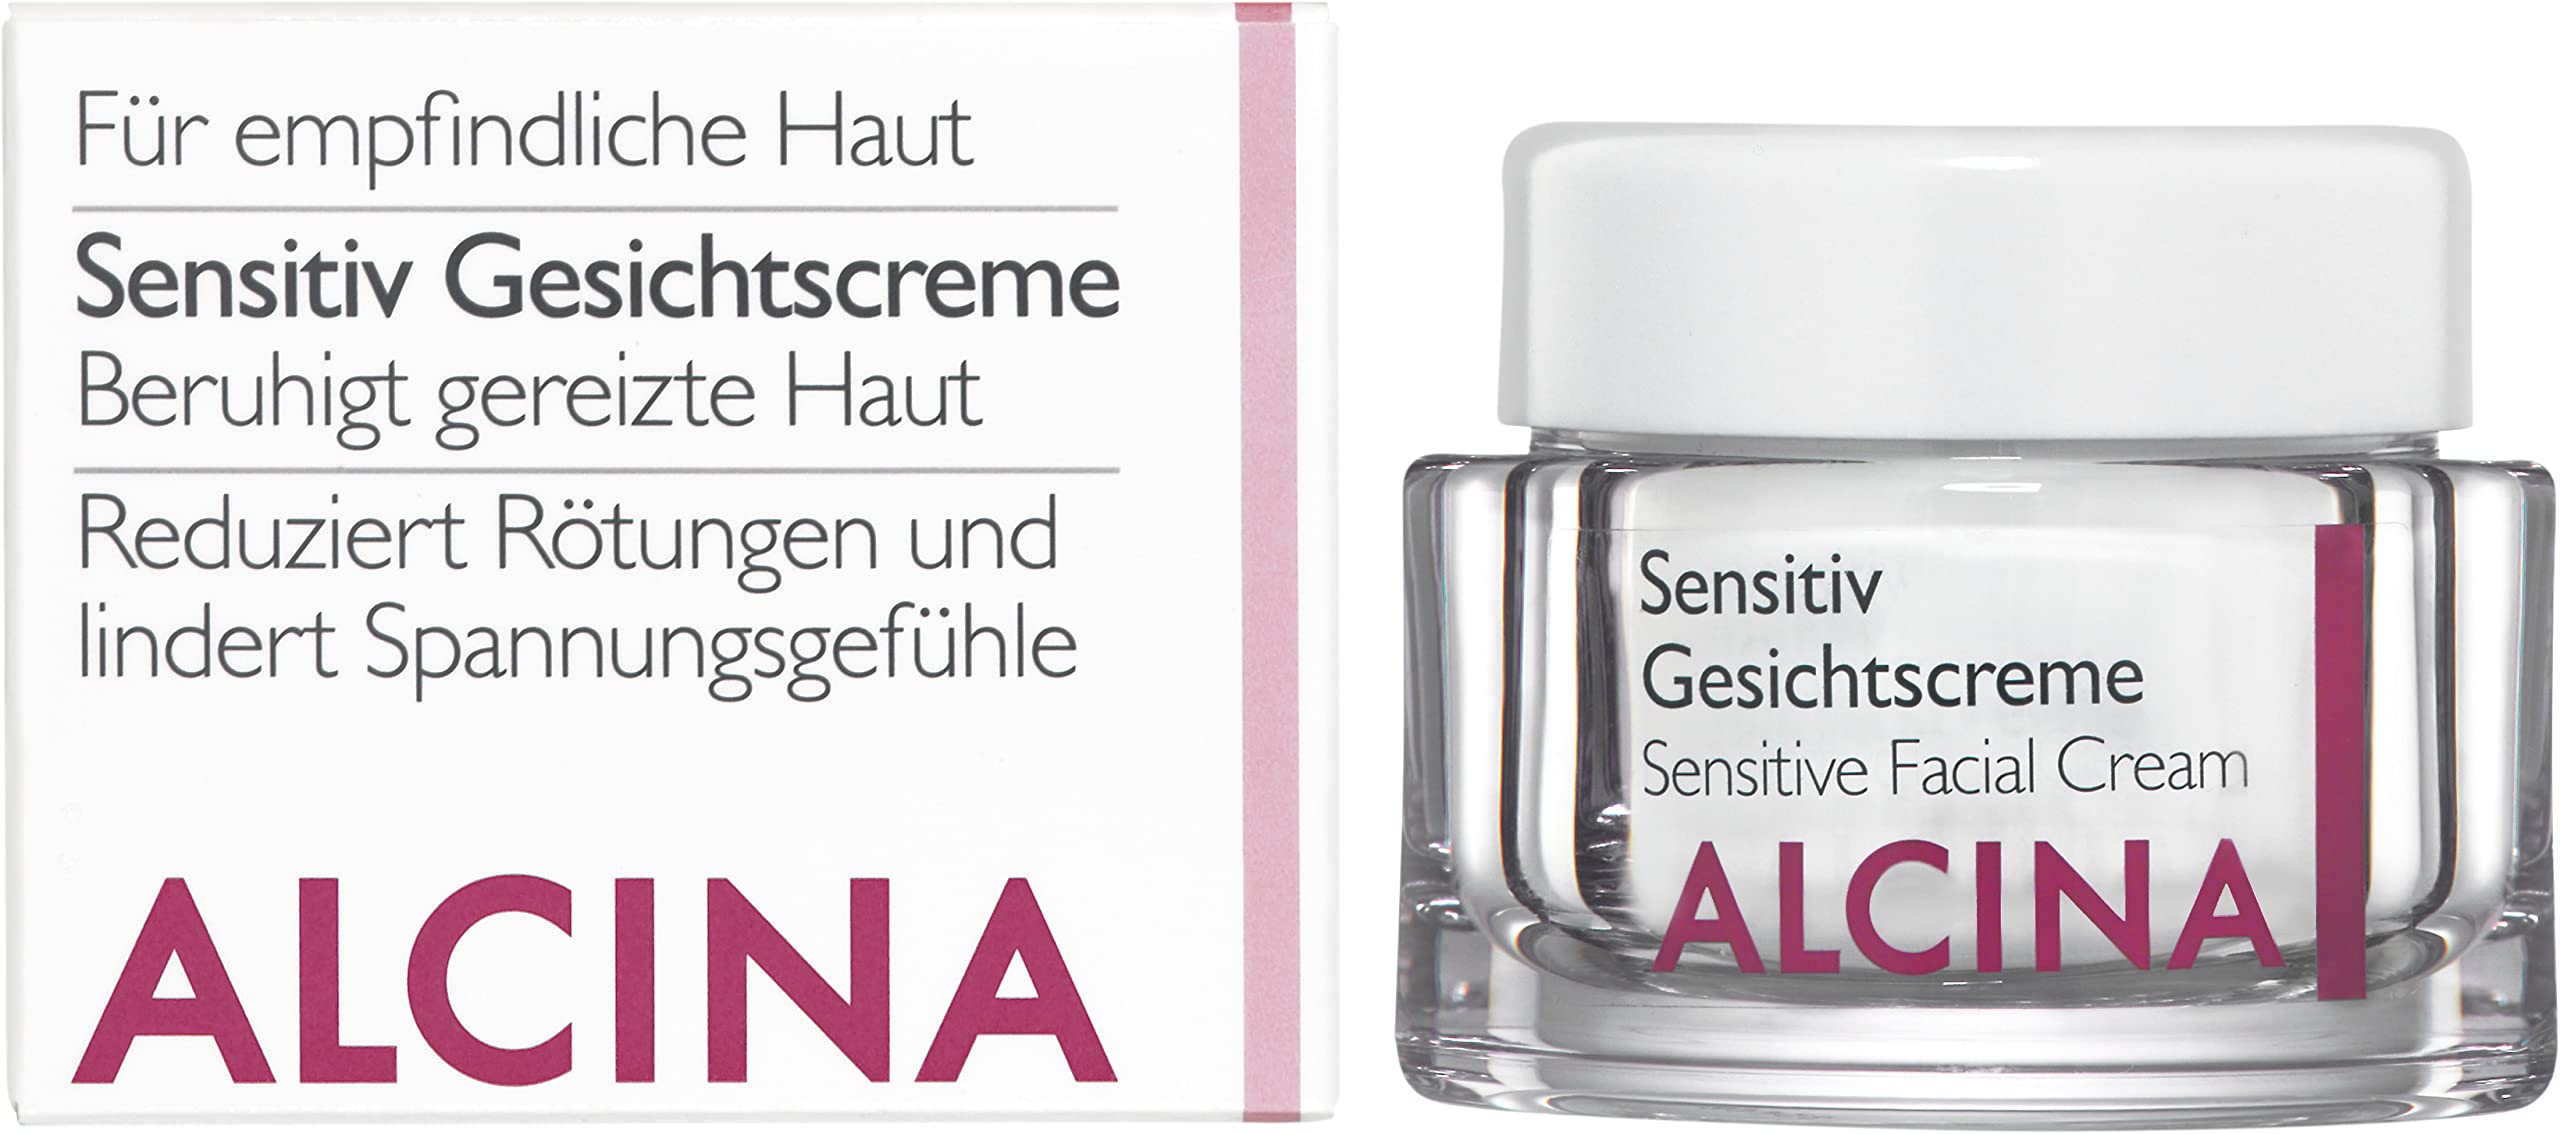 ALCINA Sensitiv Gesichtscreme - 1 x 50 ml - Empfindliche Haut - Beruhigt gereizte Haut und lindert Spannungsgefühle - Unparfümiert, für Duftstoffallergiker geeignet